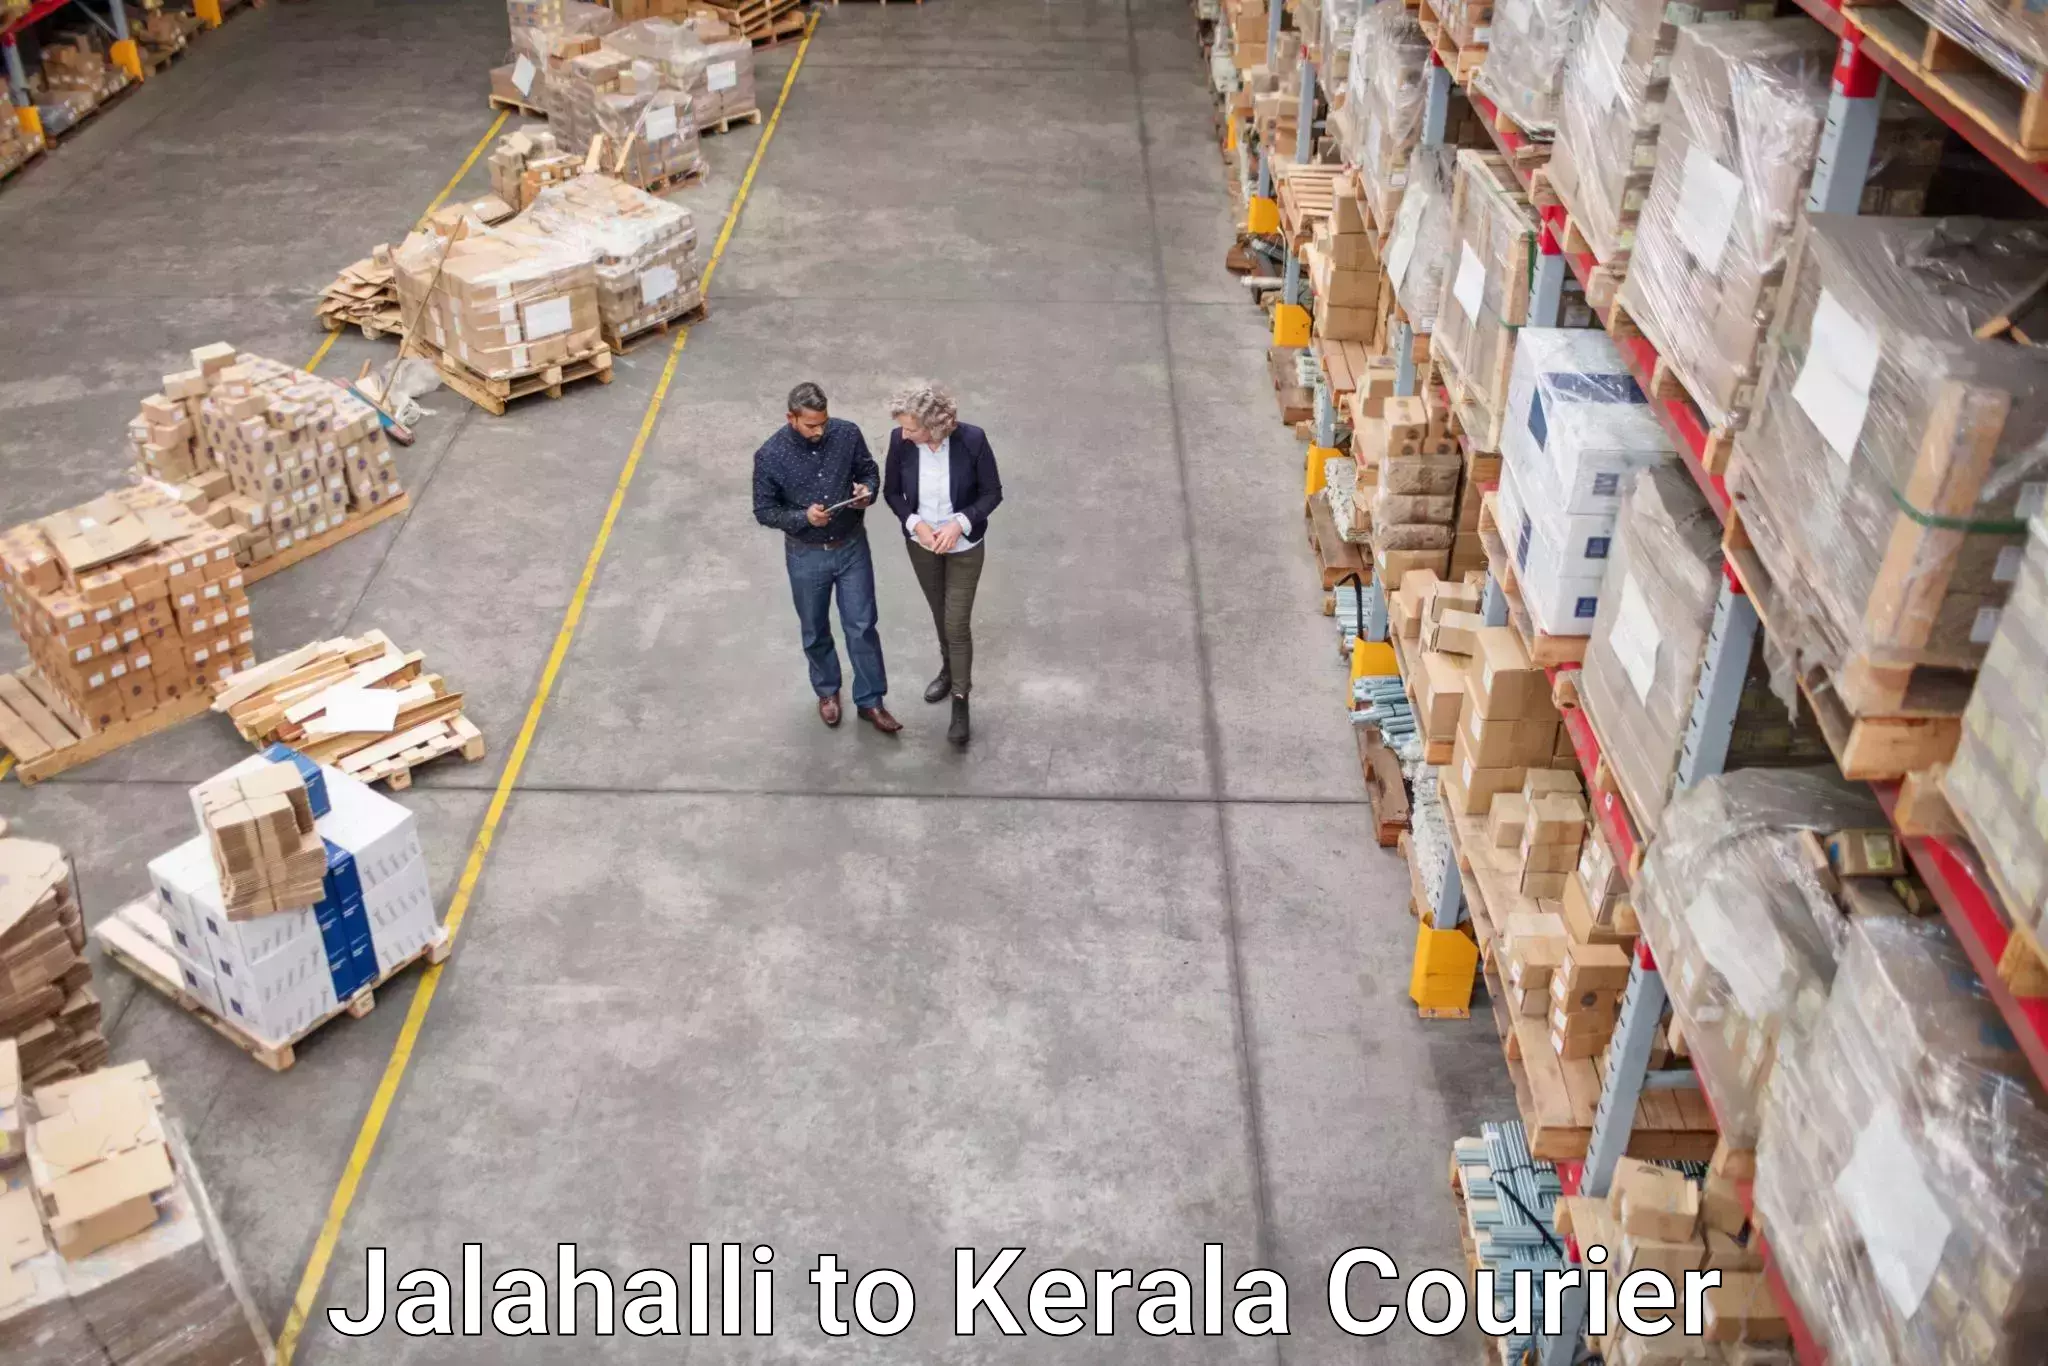 Lightweight parcel options Jalahalli to Kerala